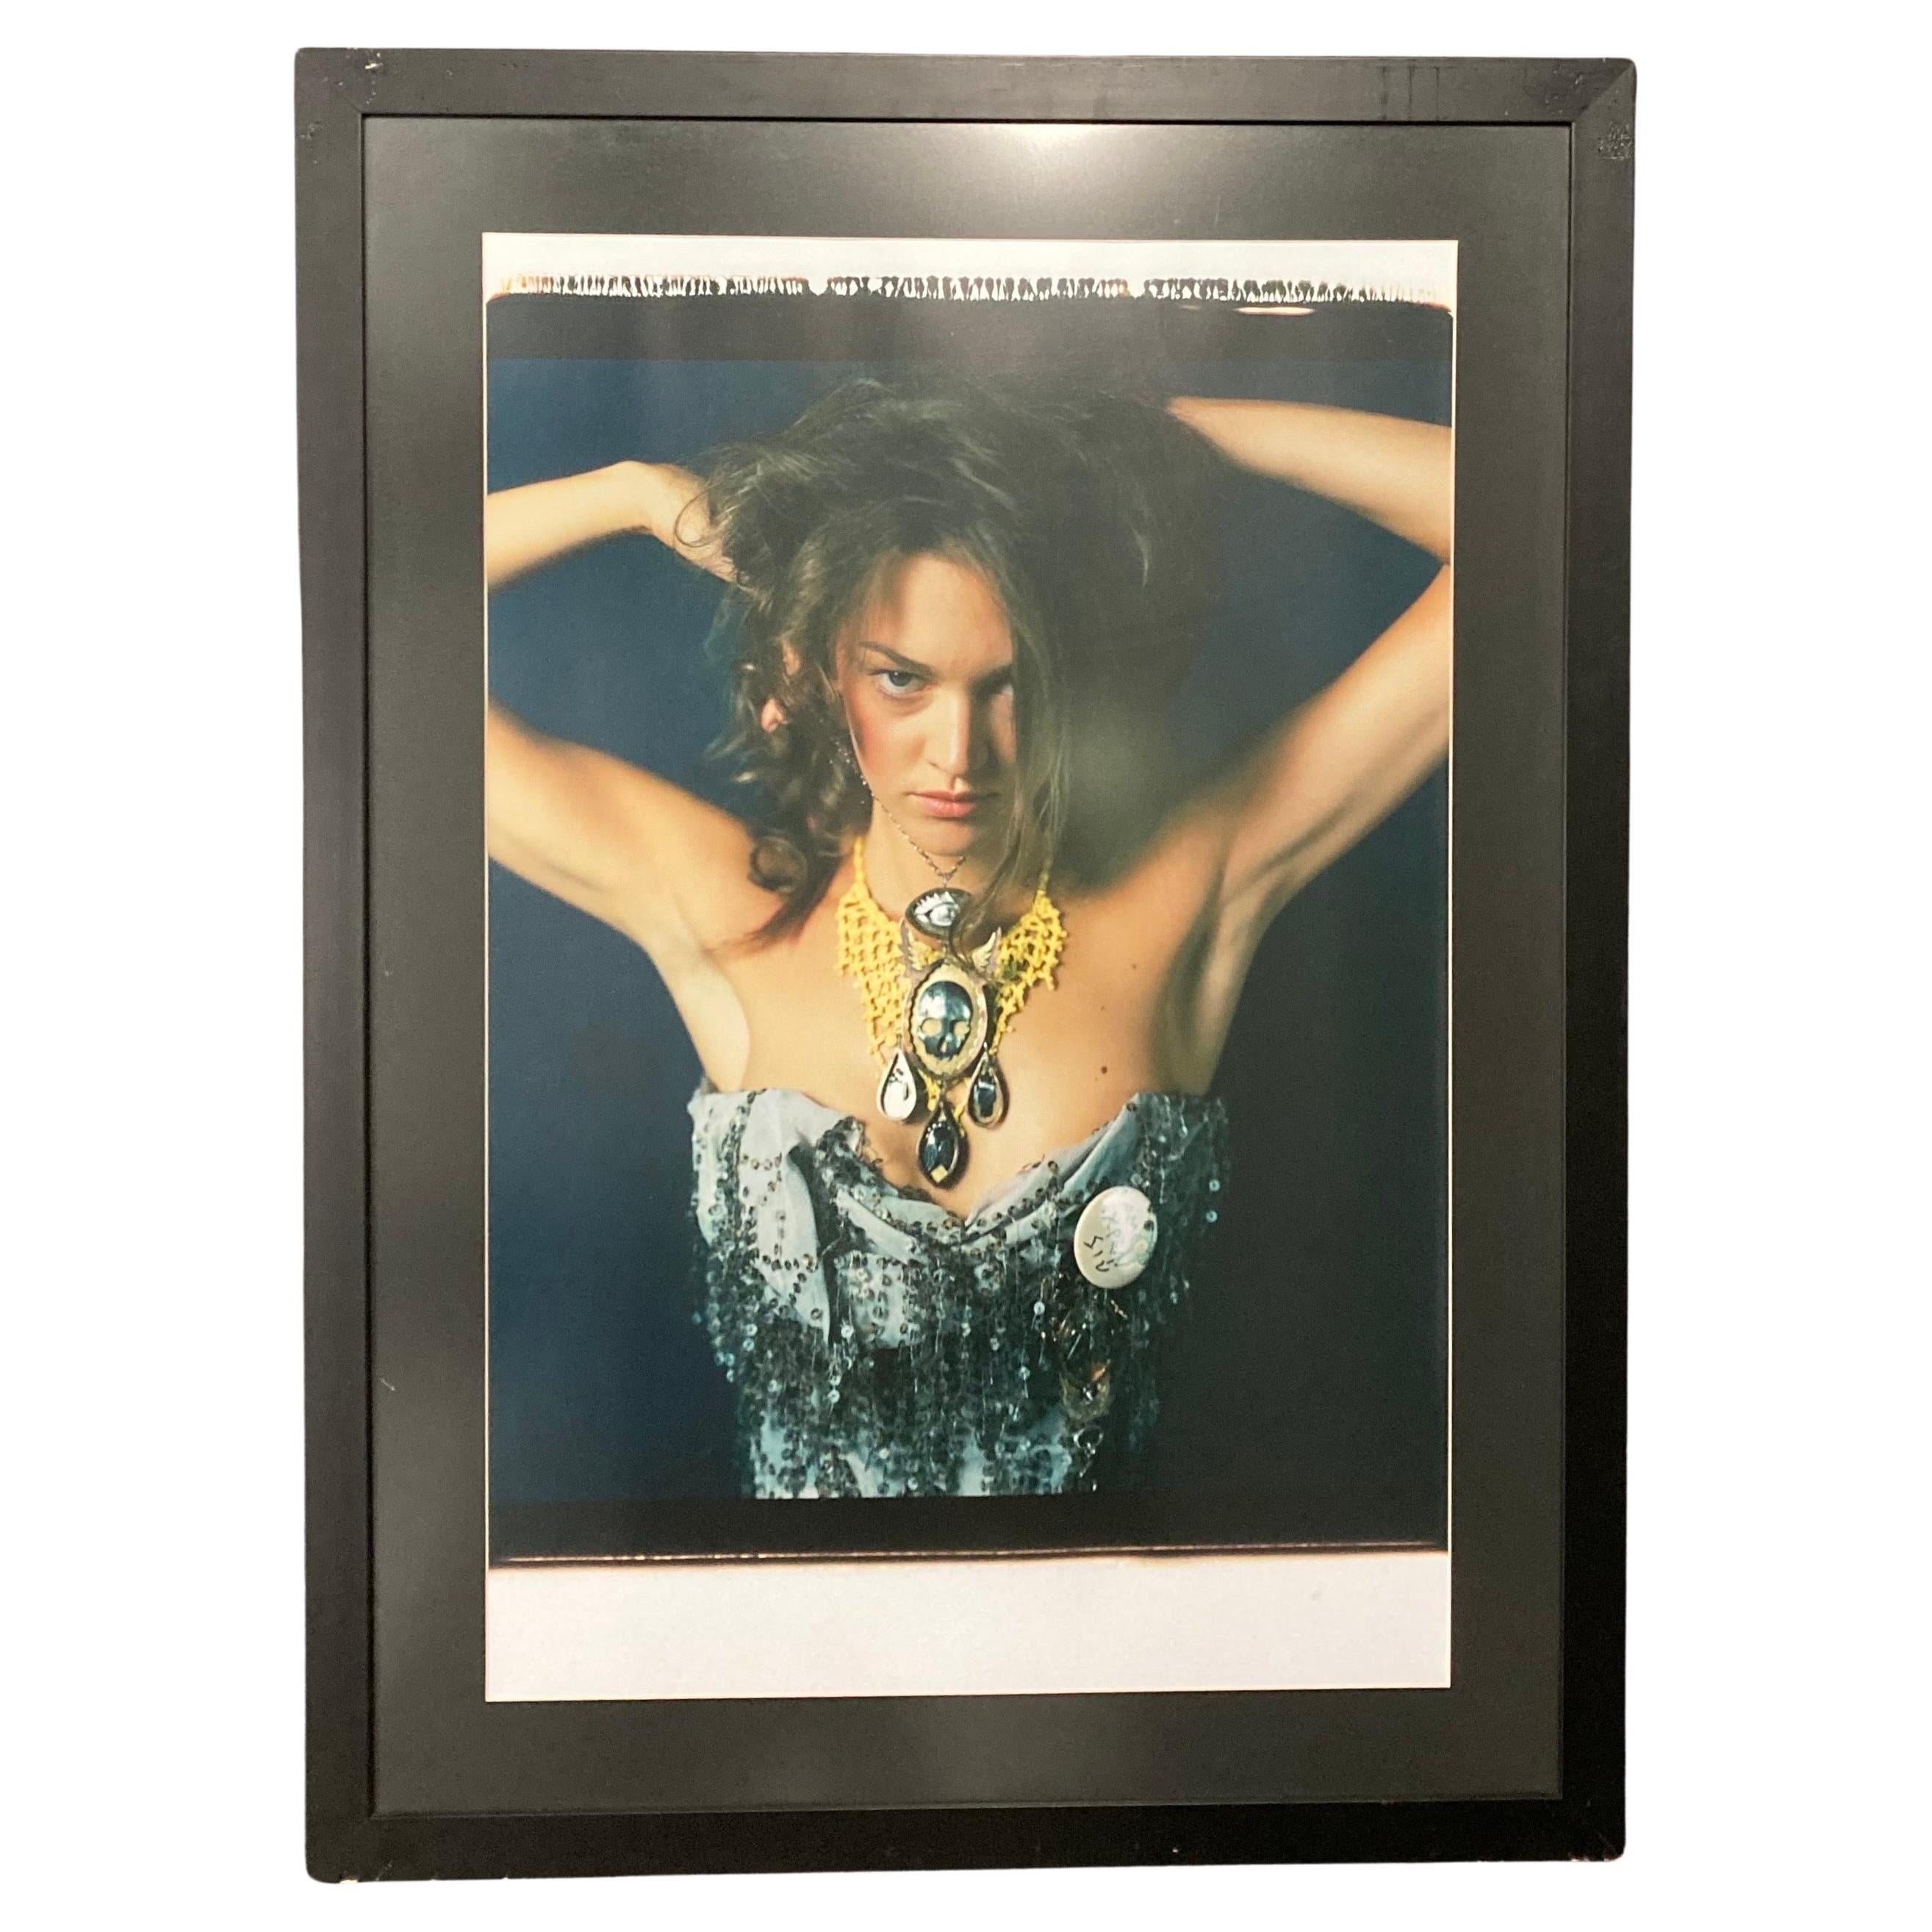 Großformatiges Polaroidfoto, Modell für Vivienne Westwood, 2008